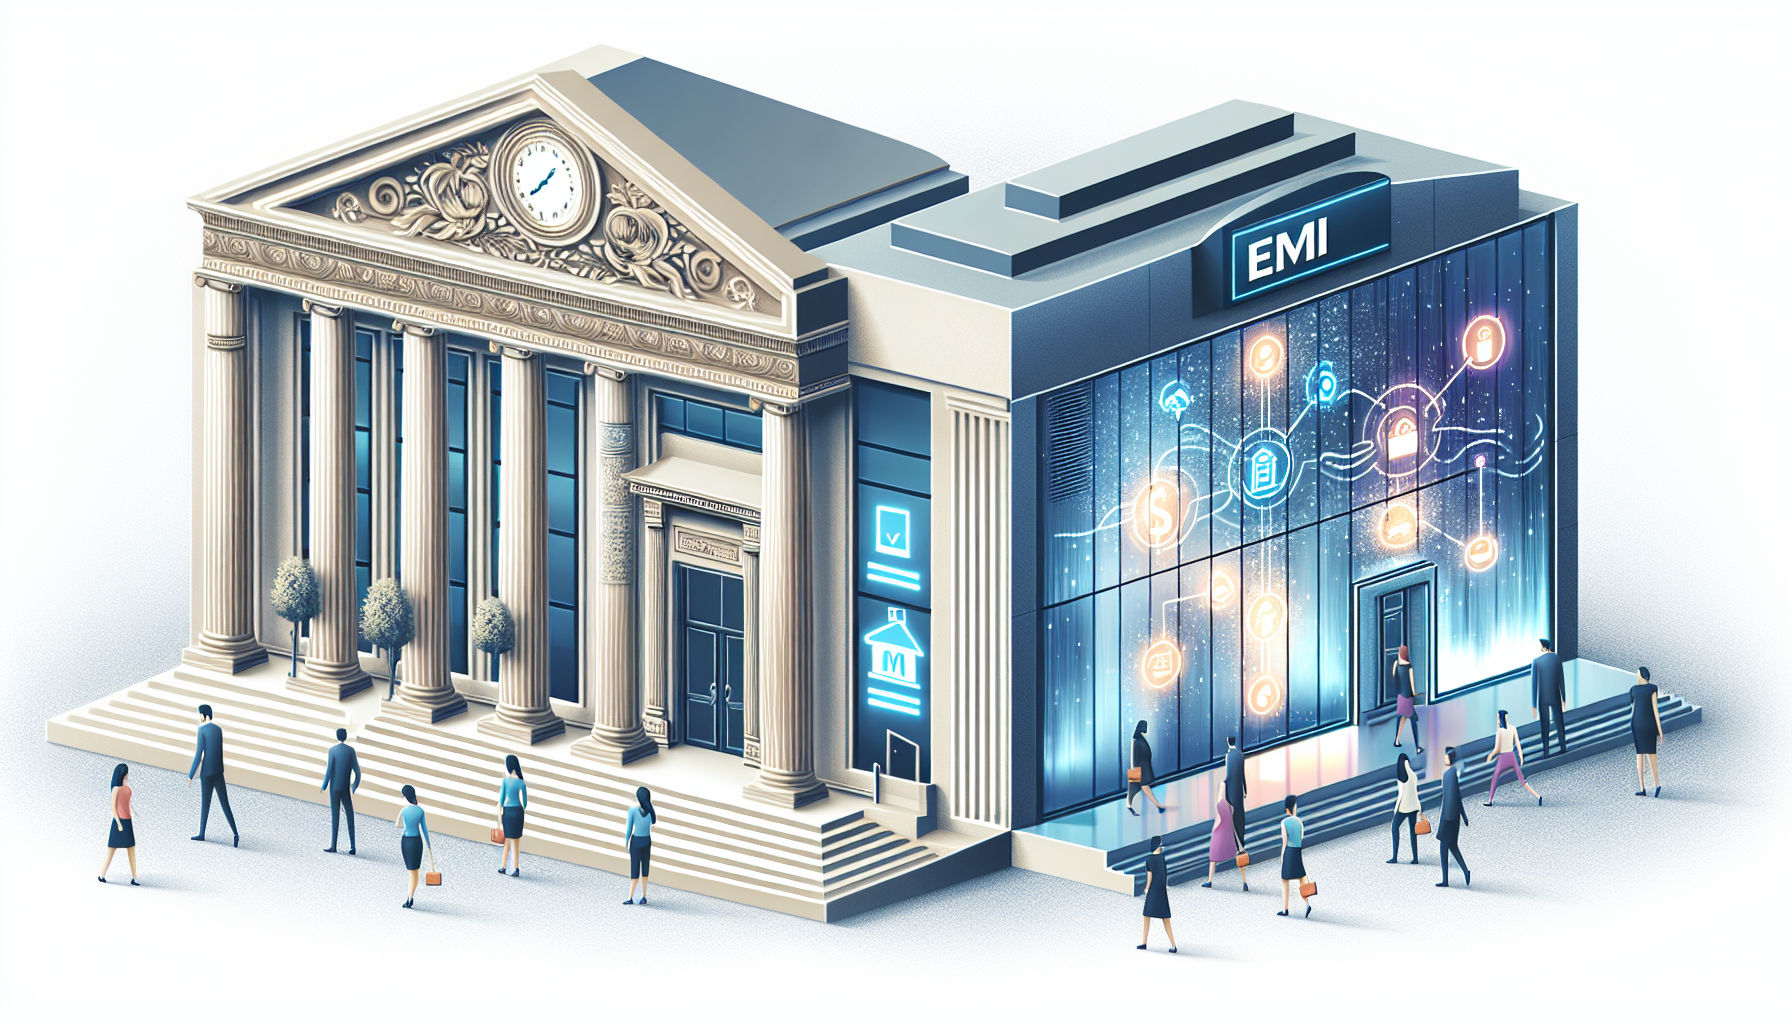 EMI 与传统银行的比较说明